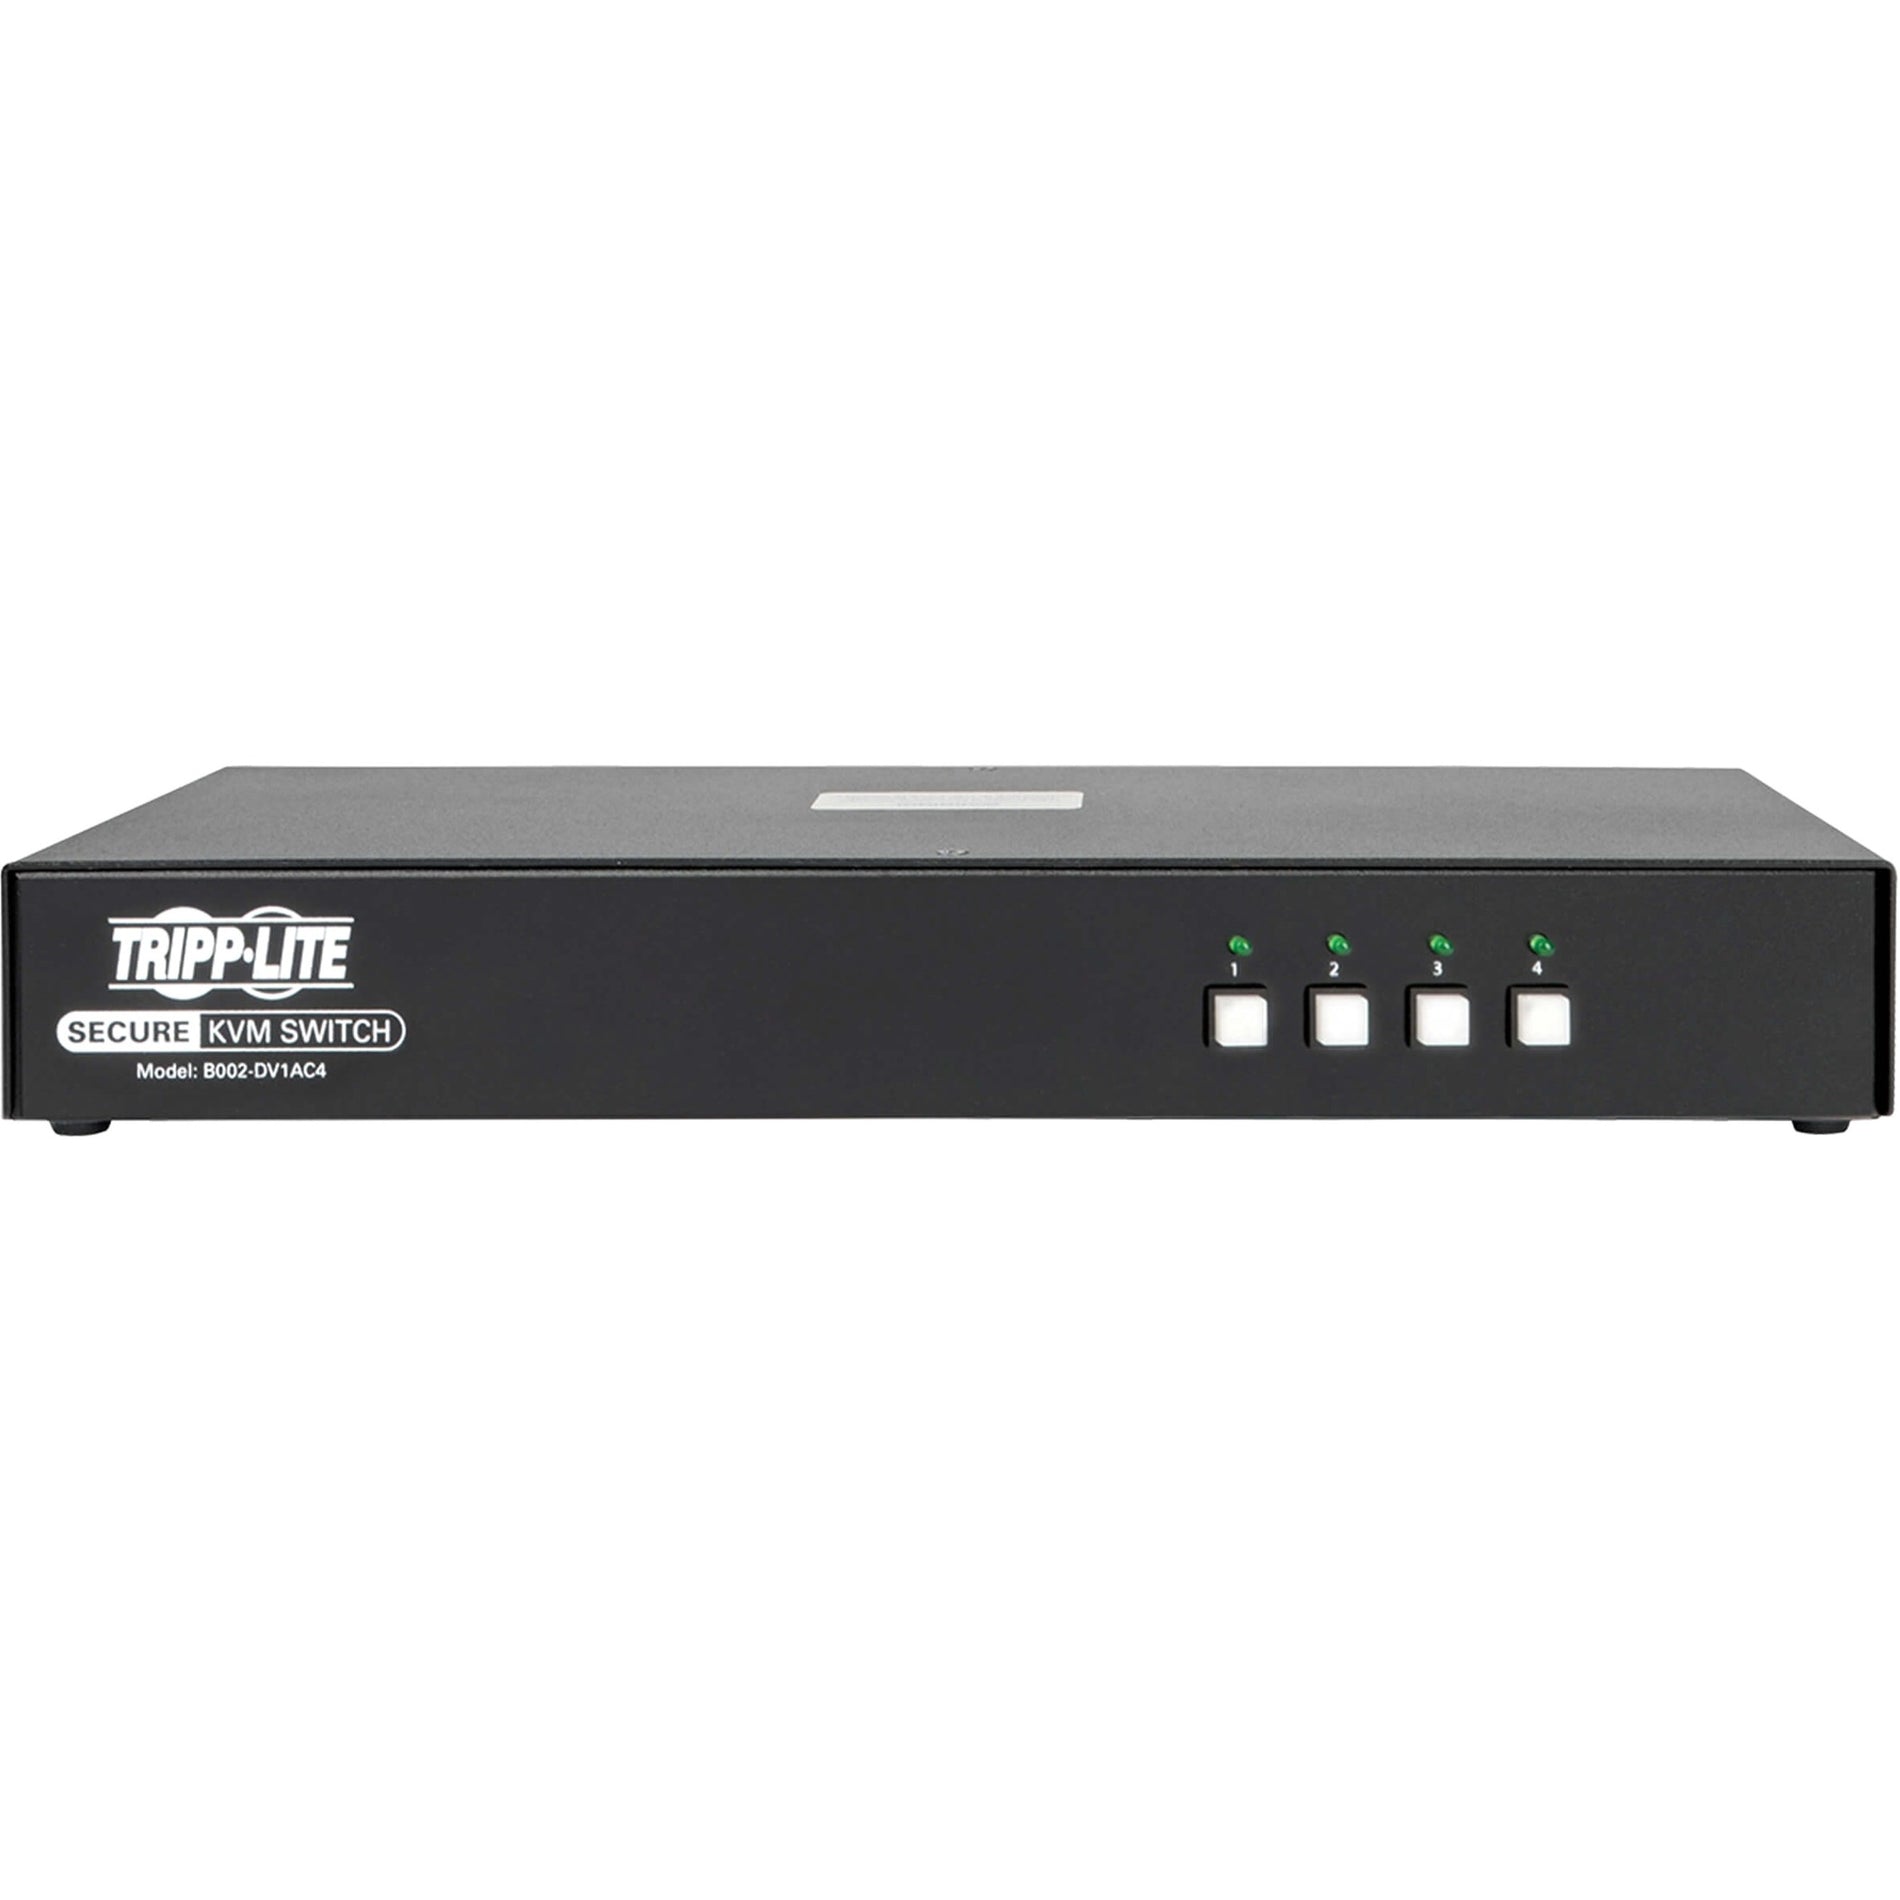 Tripp Lite B002-DV1AC4 4-Port NIAP PP3.0-Certified DVI-I KVM Switch, 2560 x 1600 Resolution, 3 Year Warranty